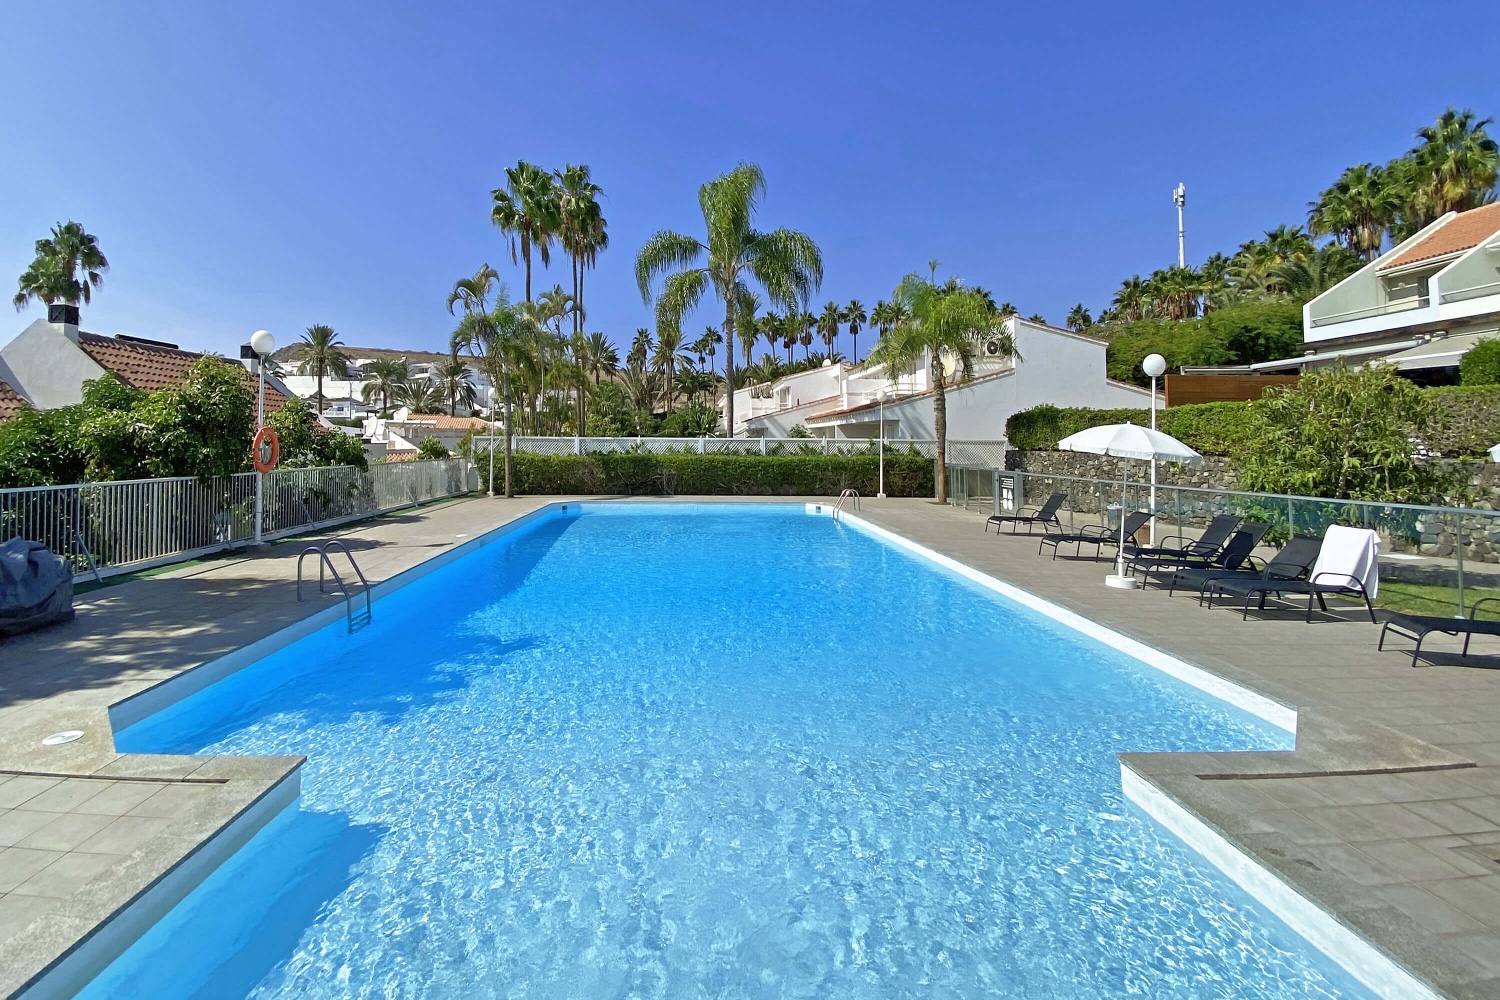 oderne villa met zwembad gelegen in een residentieel complex in de jachthaven van Pasito Blanco